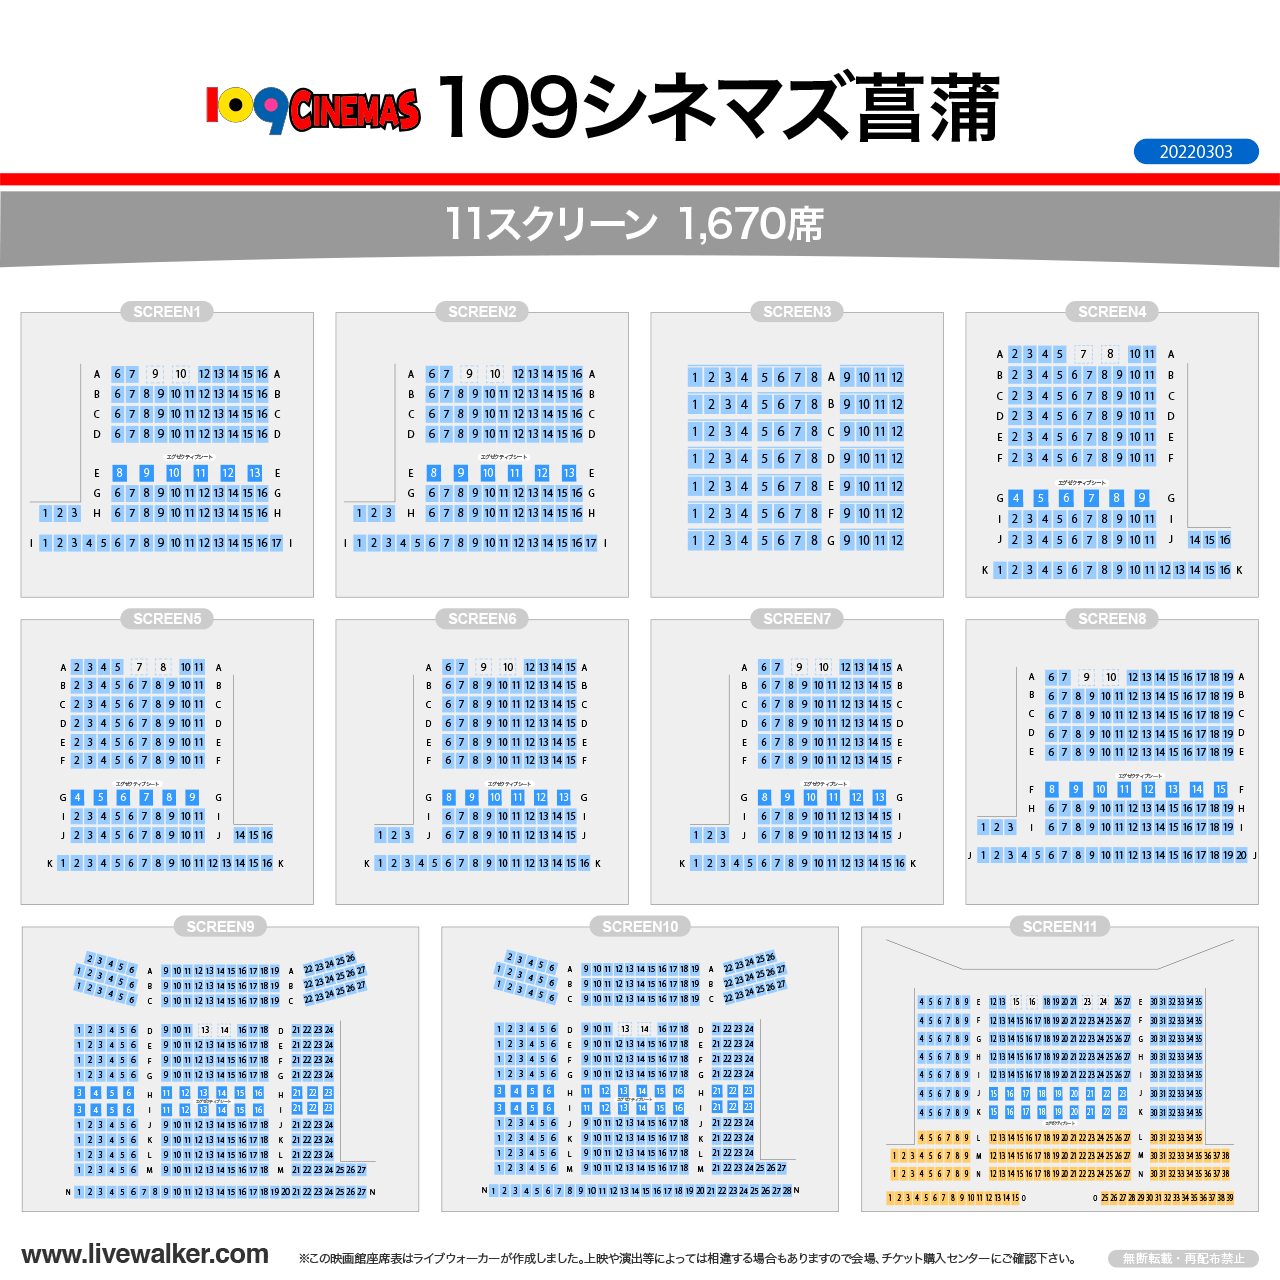 109シネマズ菖蒲シアターの座席表